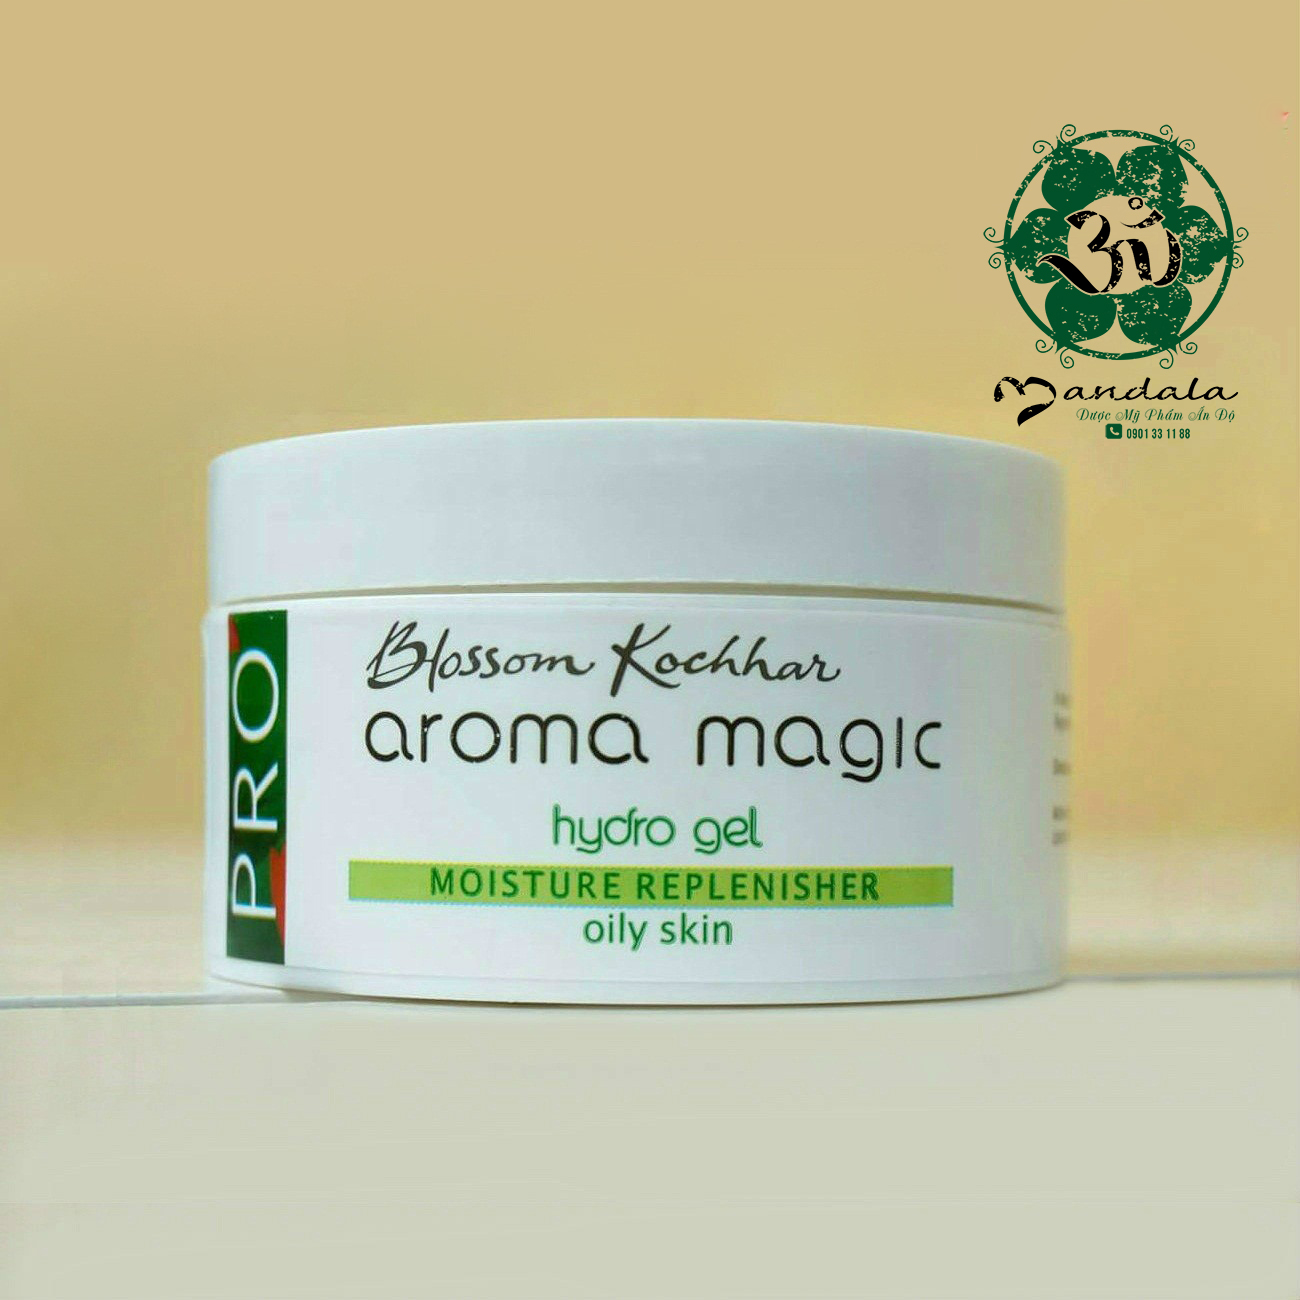 Hydro gel Aroma Magic – siêu phẩm cấp nước cho làn da